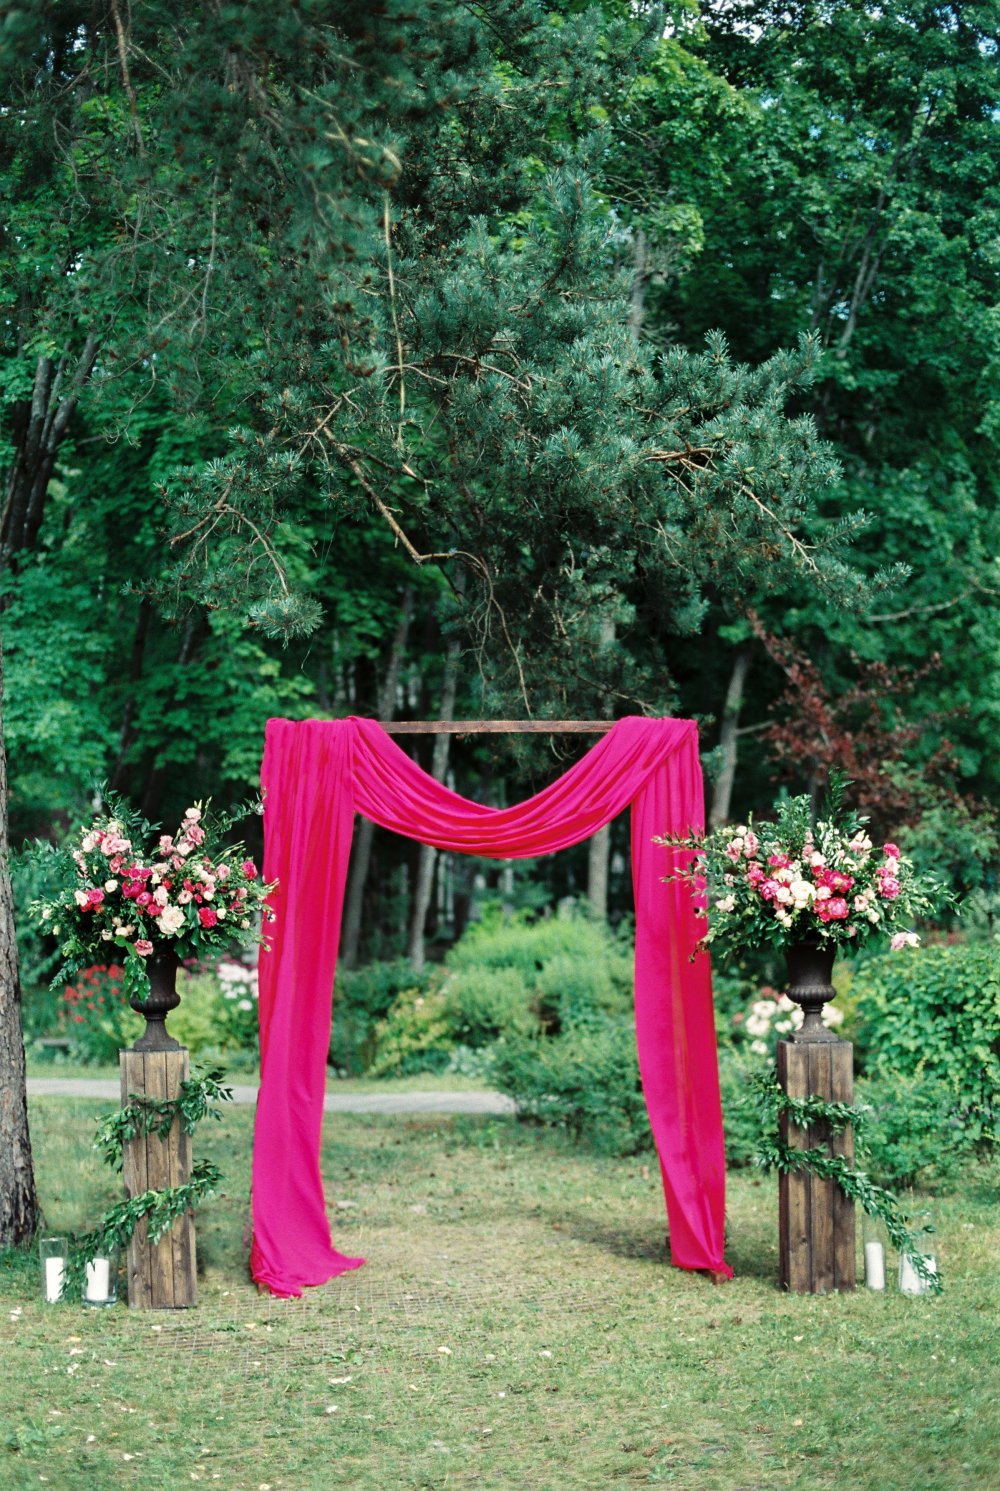 Яркую свадебную арку с драпировками легкой тканью элегантно подчеркнули пышные цветочные композиии в классических вазонах на деревянных подставках